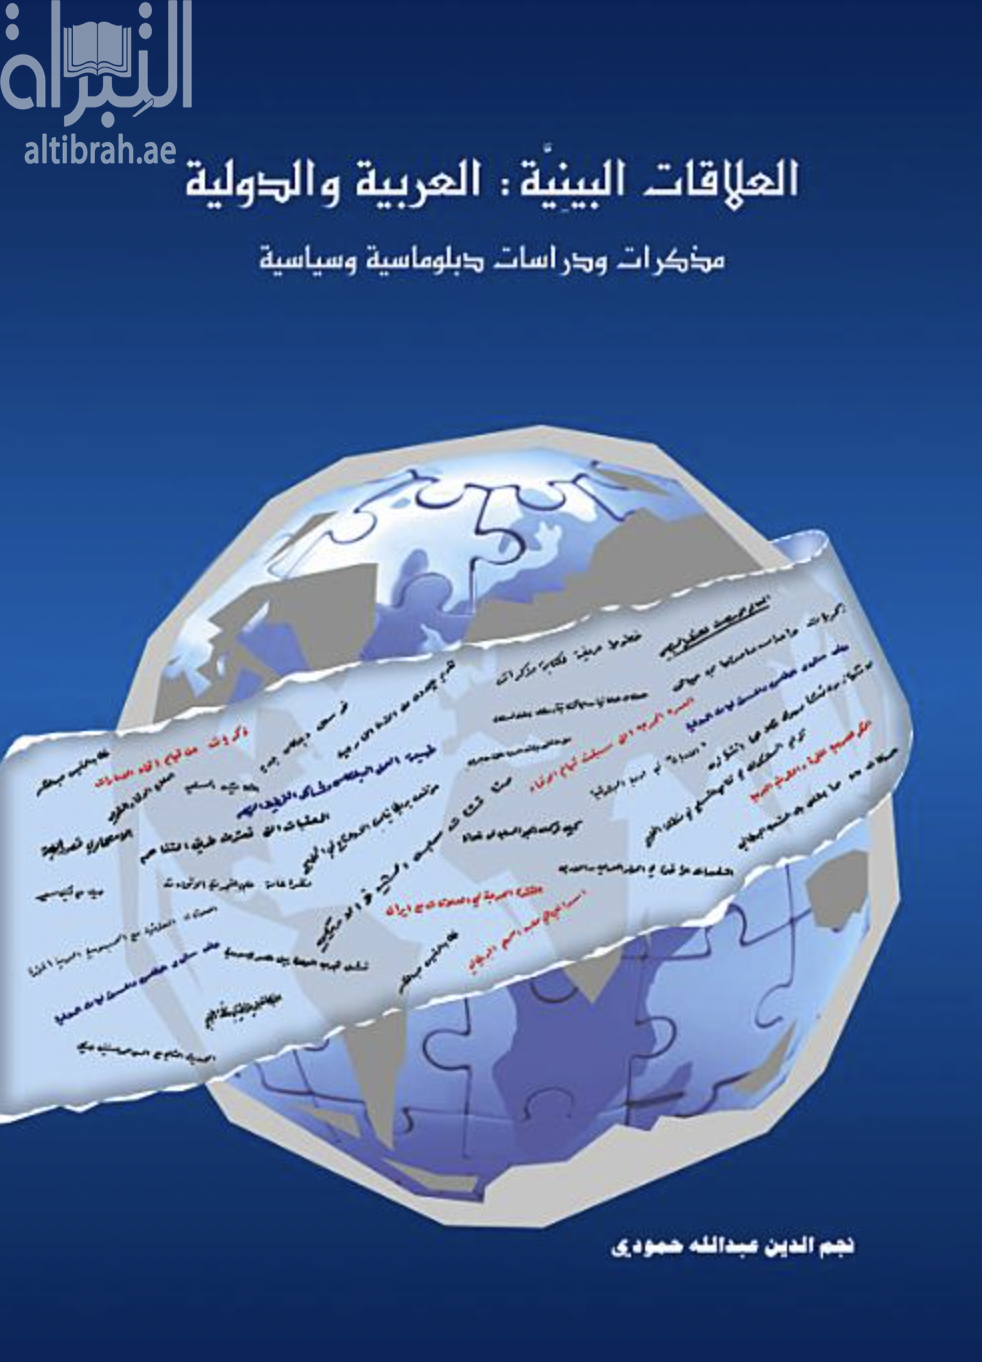 كتاب العلاقات البينية العربية والدولية : مذكرات ودراسات دبلوماسية وسياسية